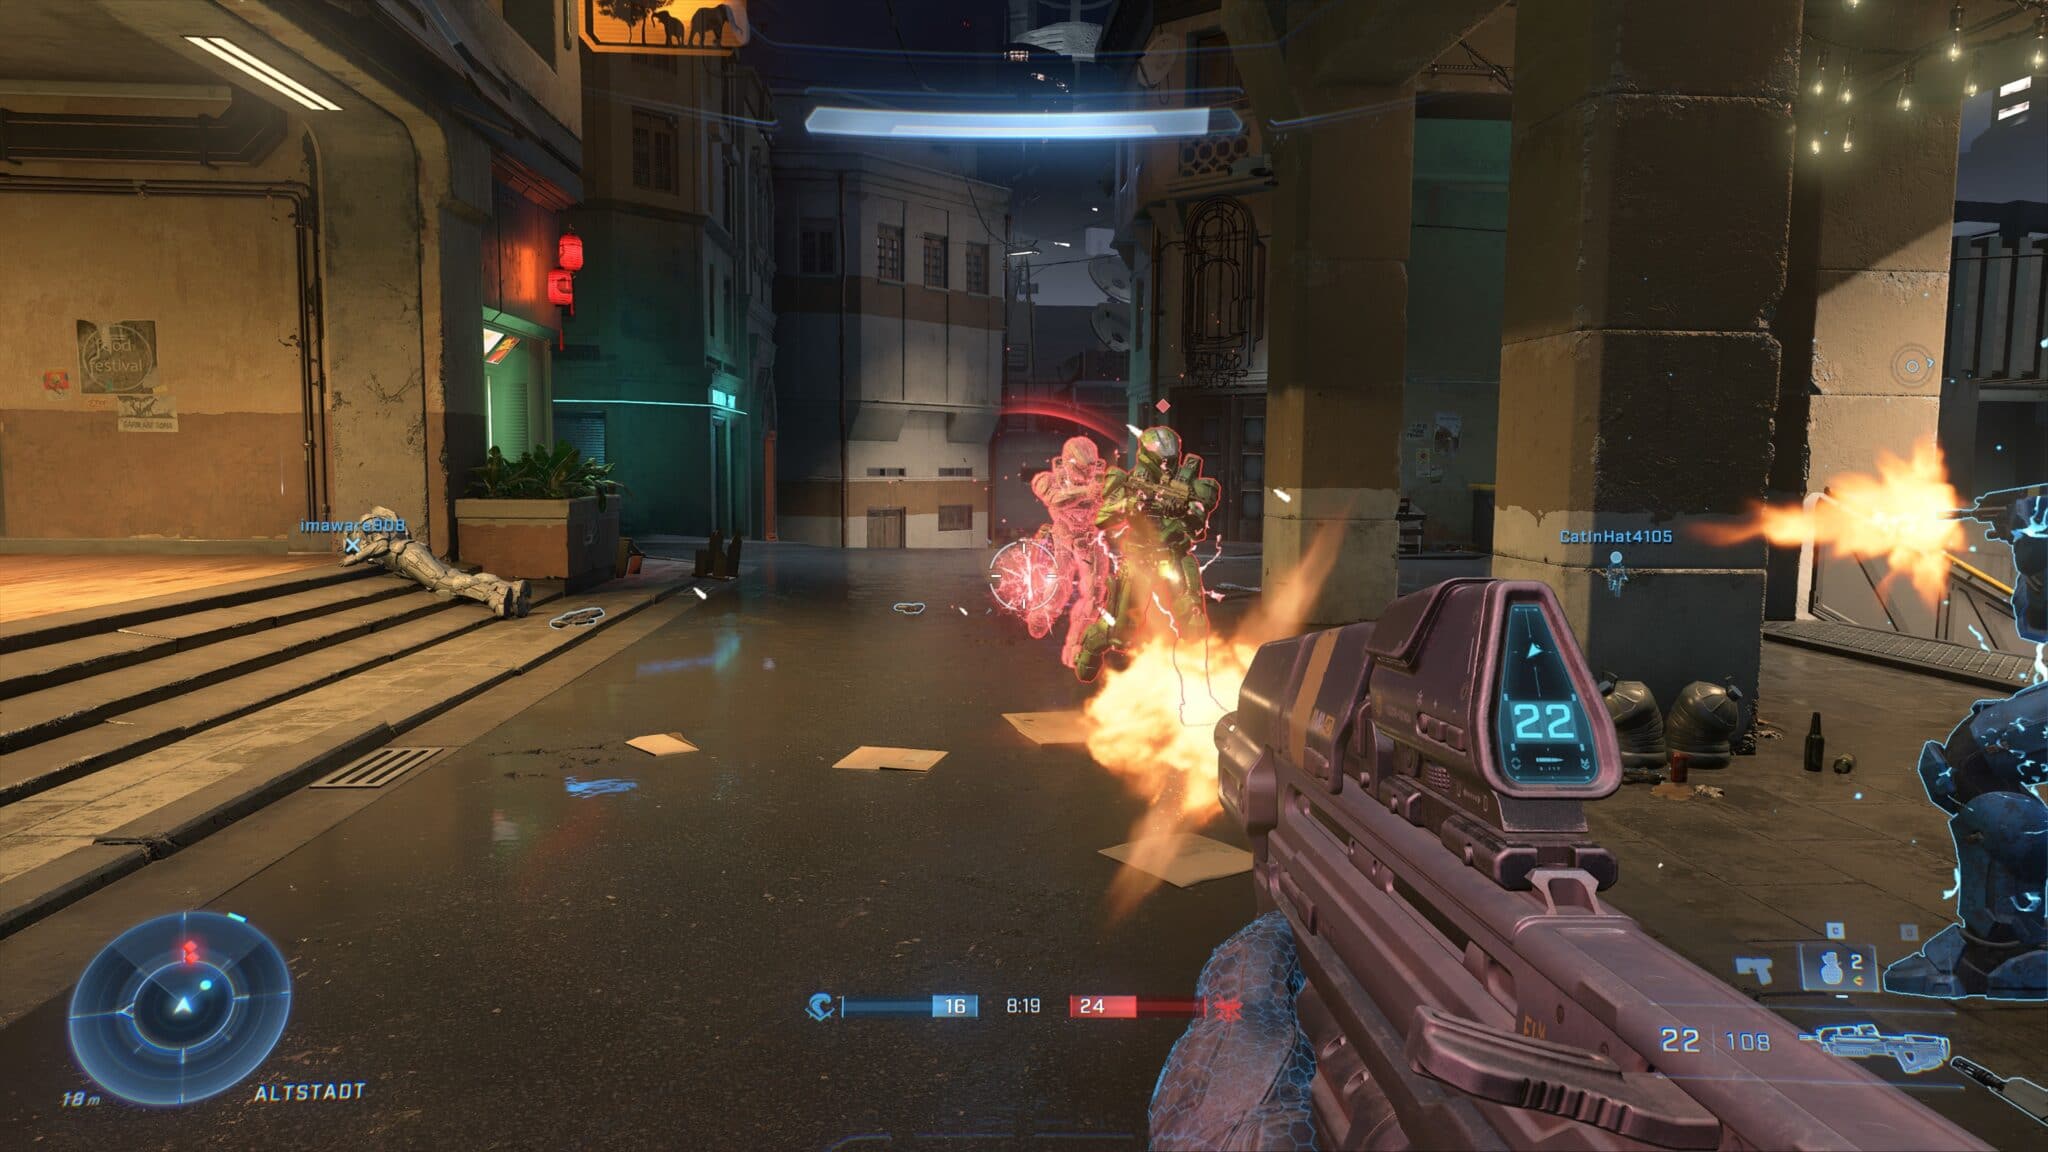 Le gameplay du jeu de tir est actuellement le point fort de Halo Infinite. Mais le package global est encore maigre